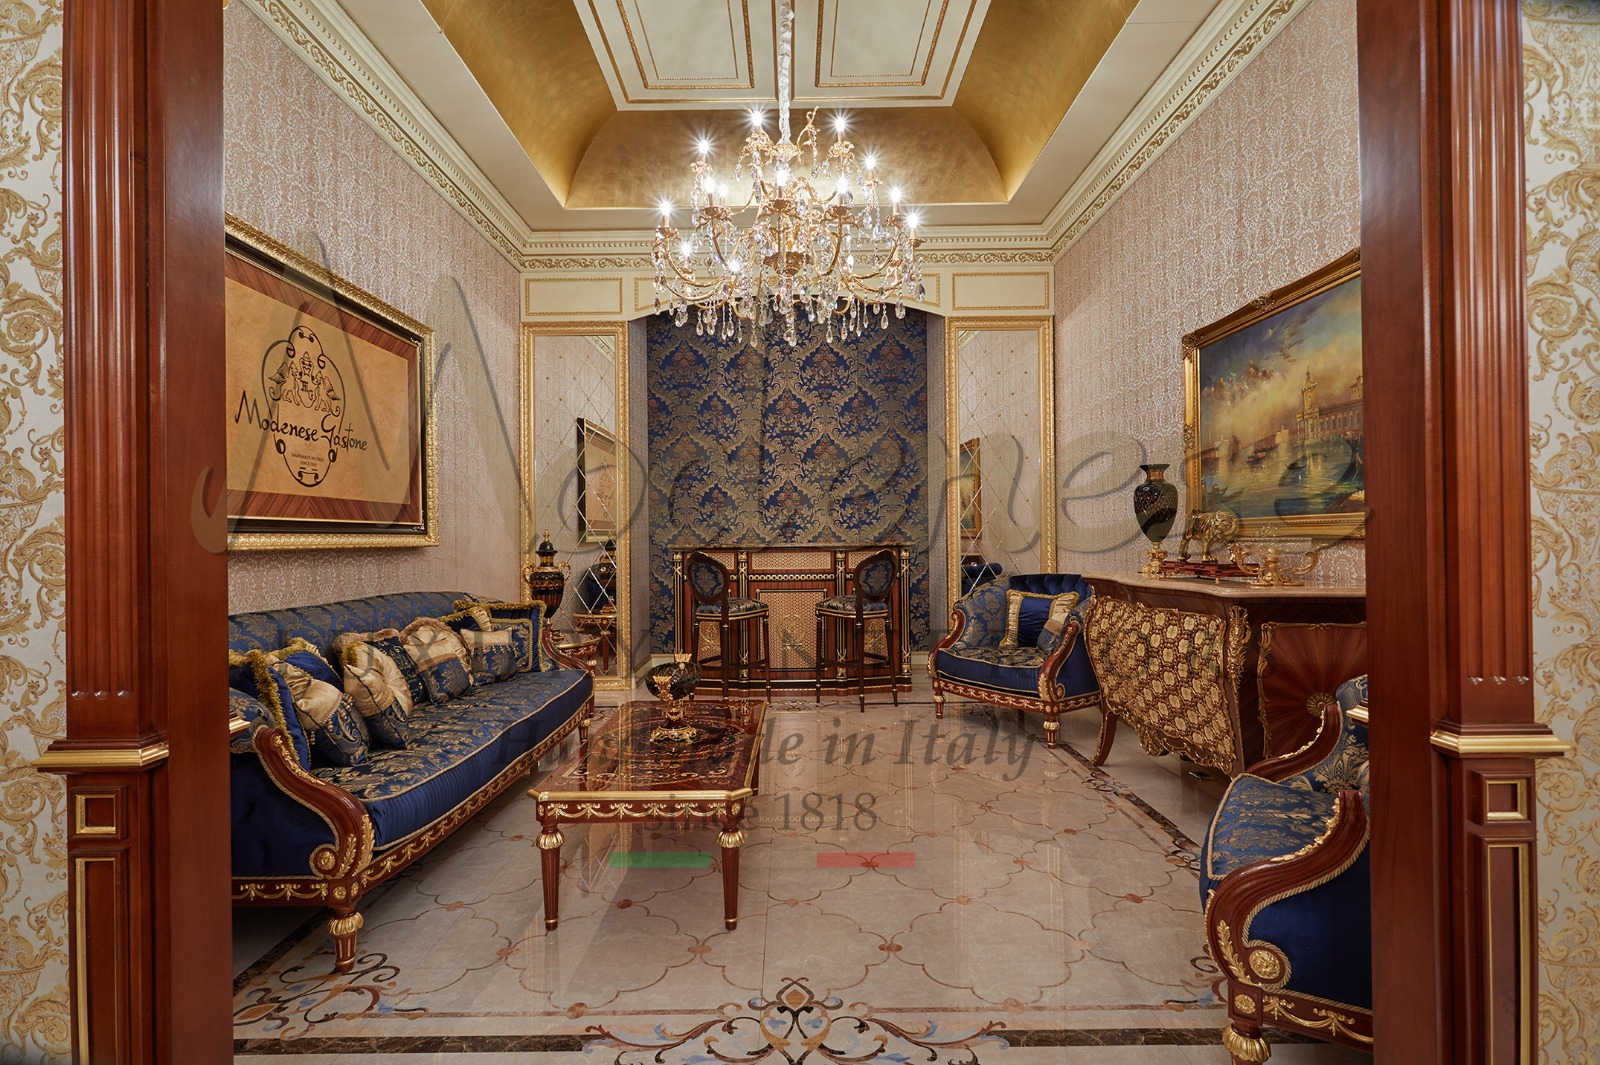 décoration intérieure meubles classiques de luxe projets de décoration intérieure palais royal classe style français italien application feuille d'or